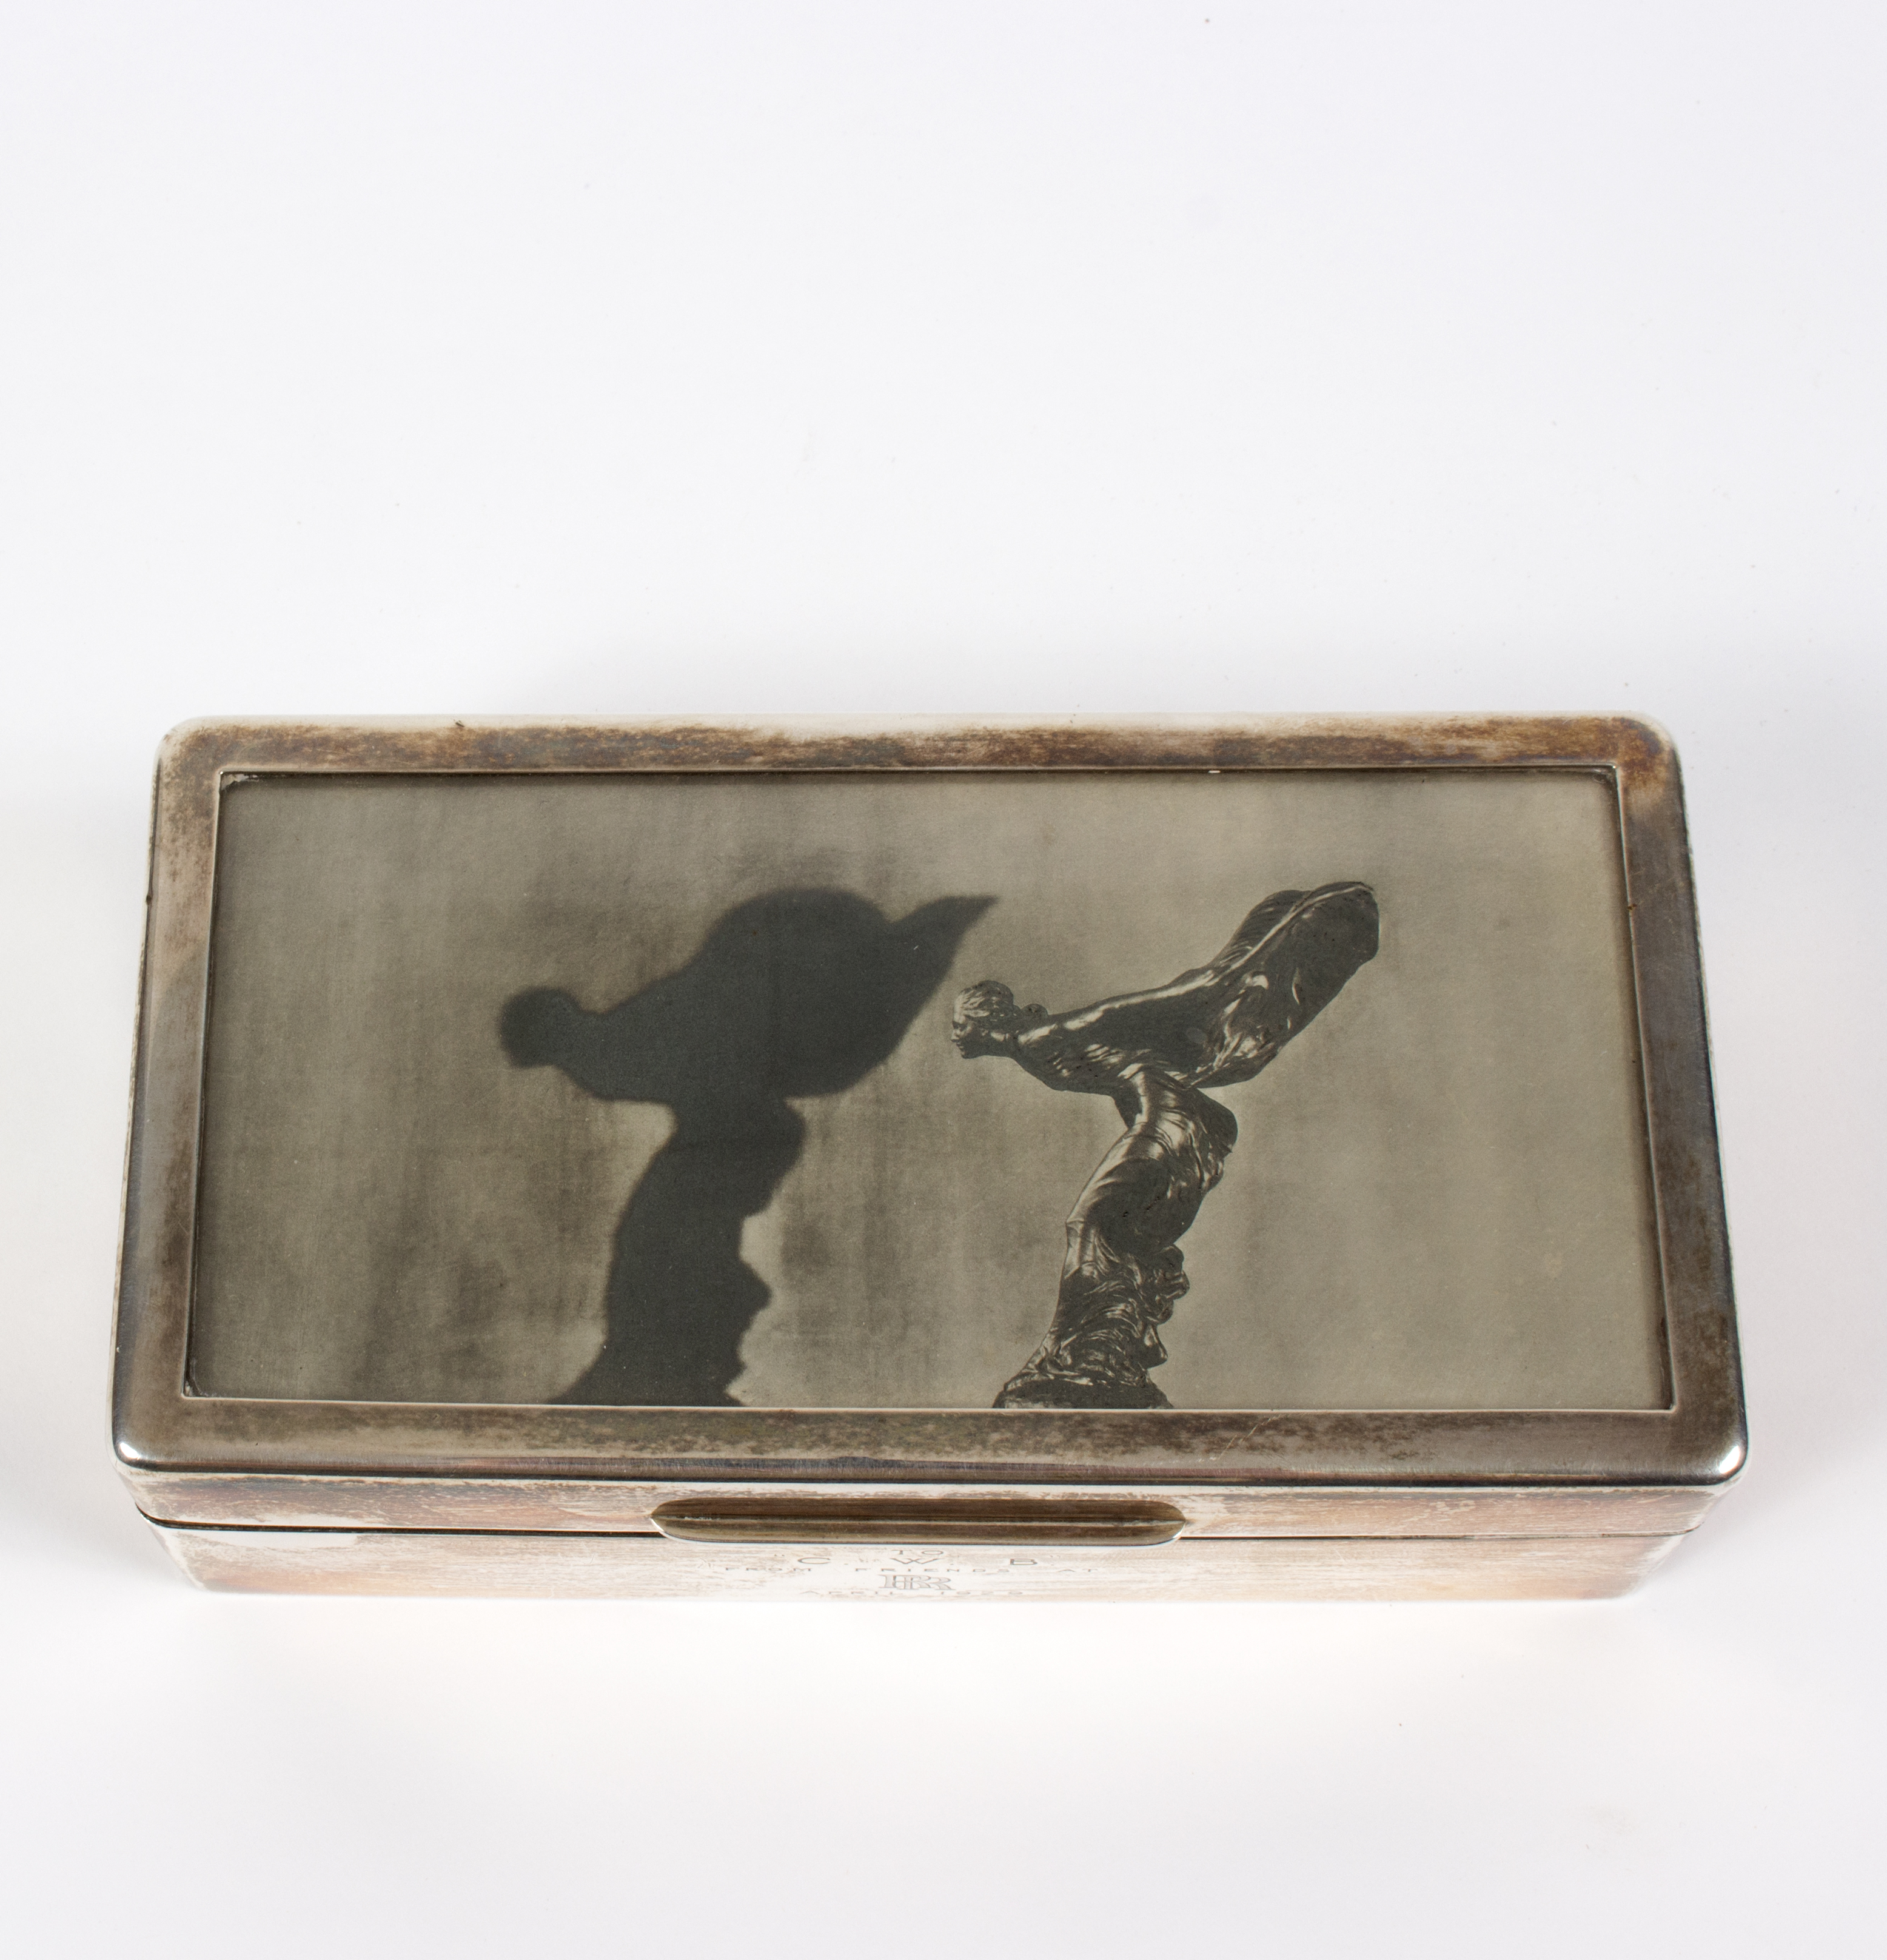 A silver cigarette box, C S & F S London 1928, - Image 2 of 4